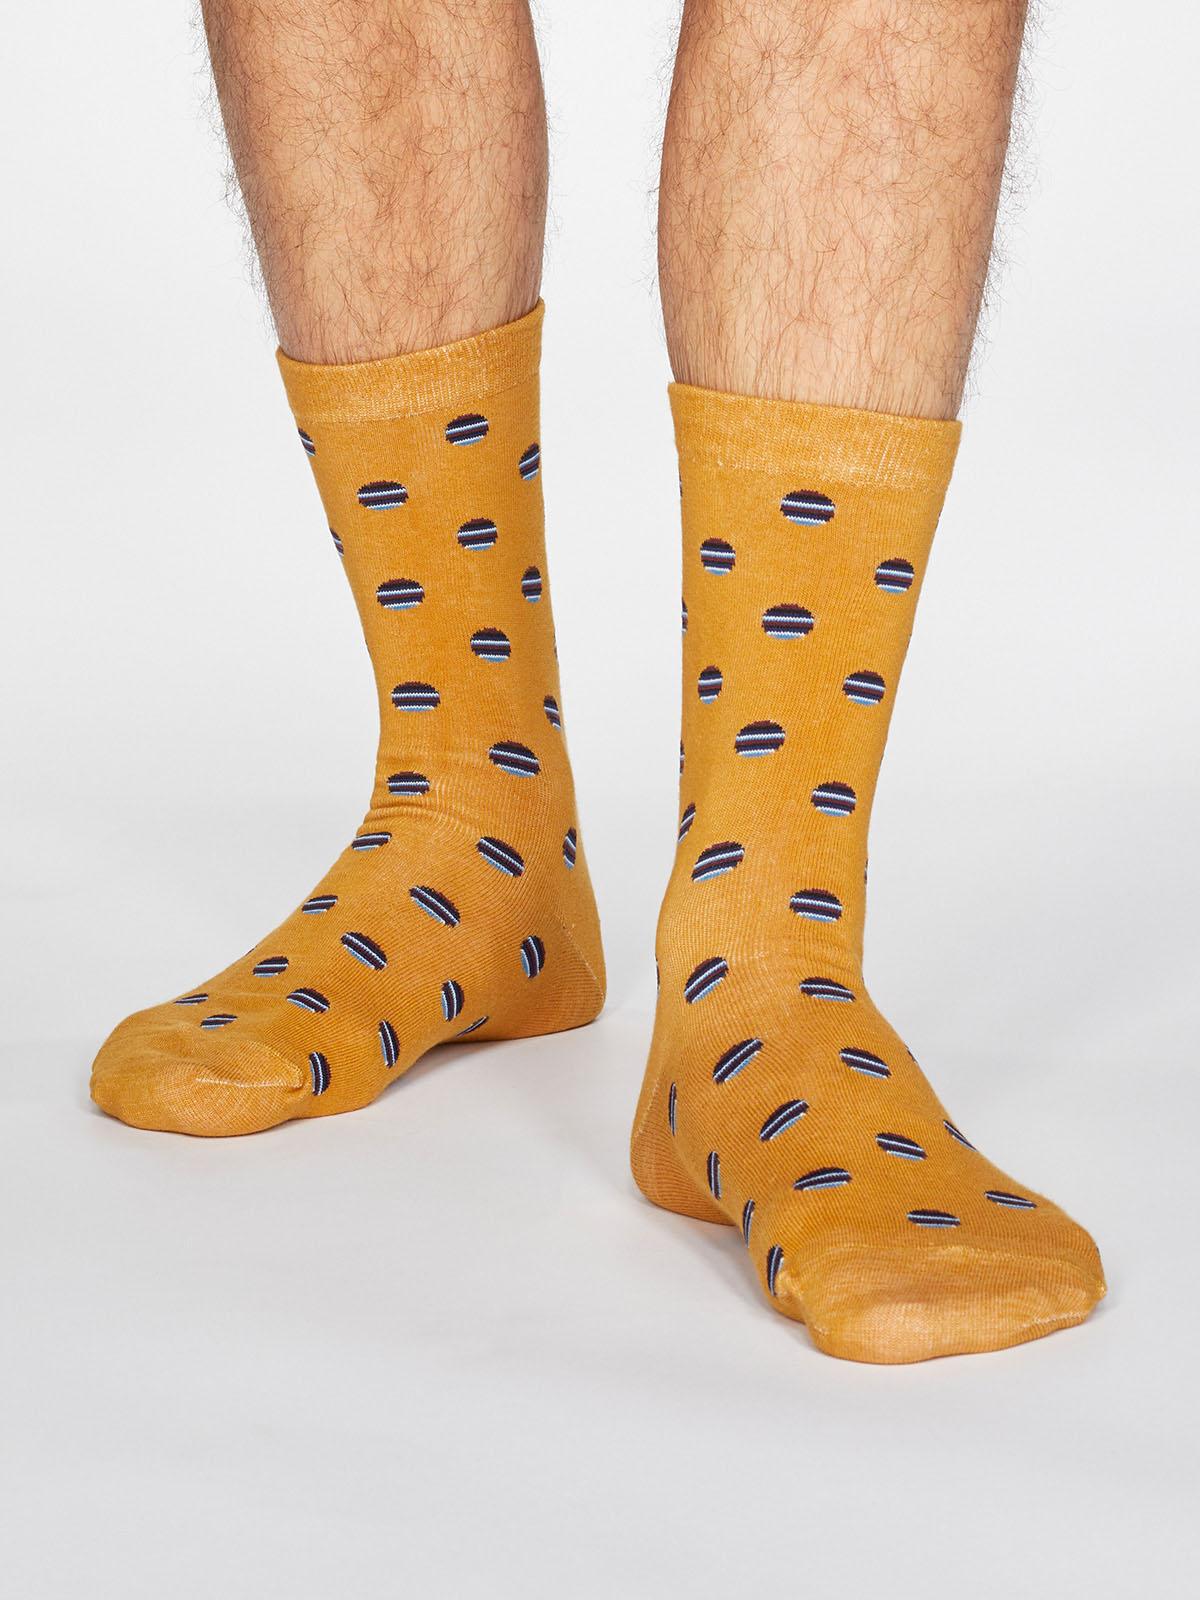 Grayson Spot Stripe Socks - Mustard Yellow - Thought Clothing UK